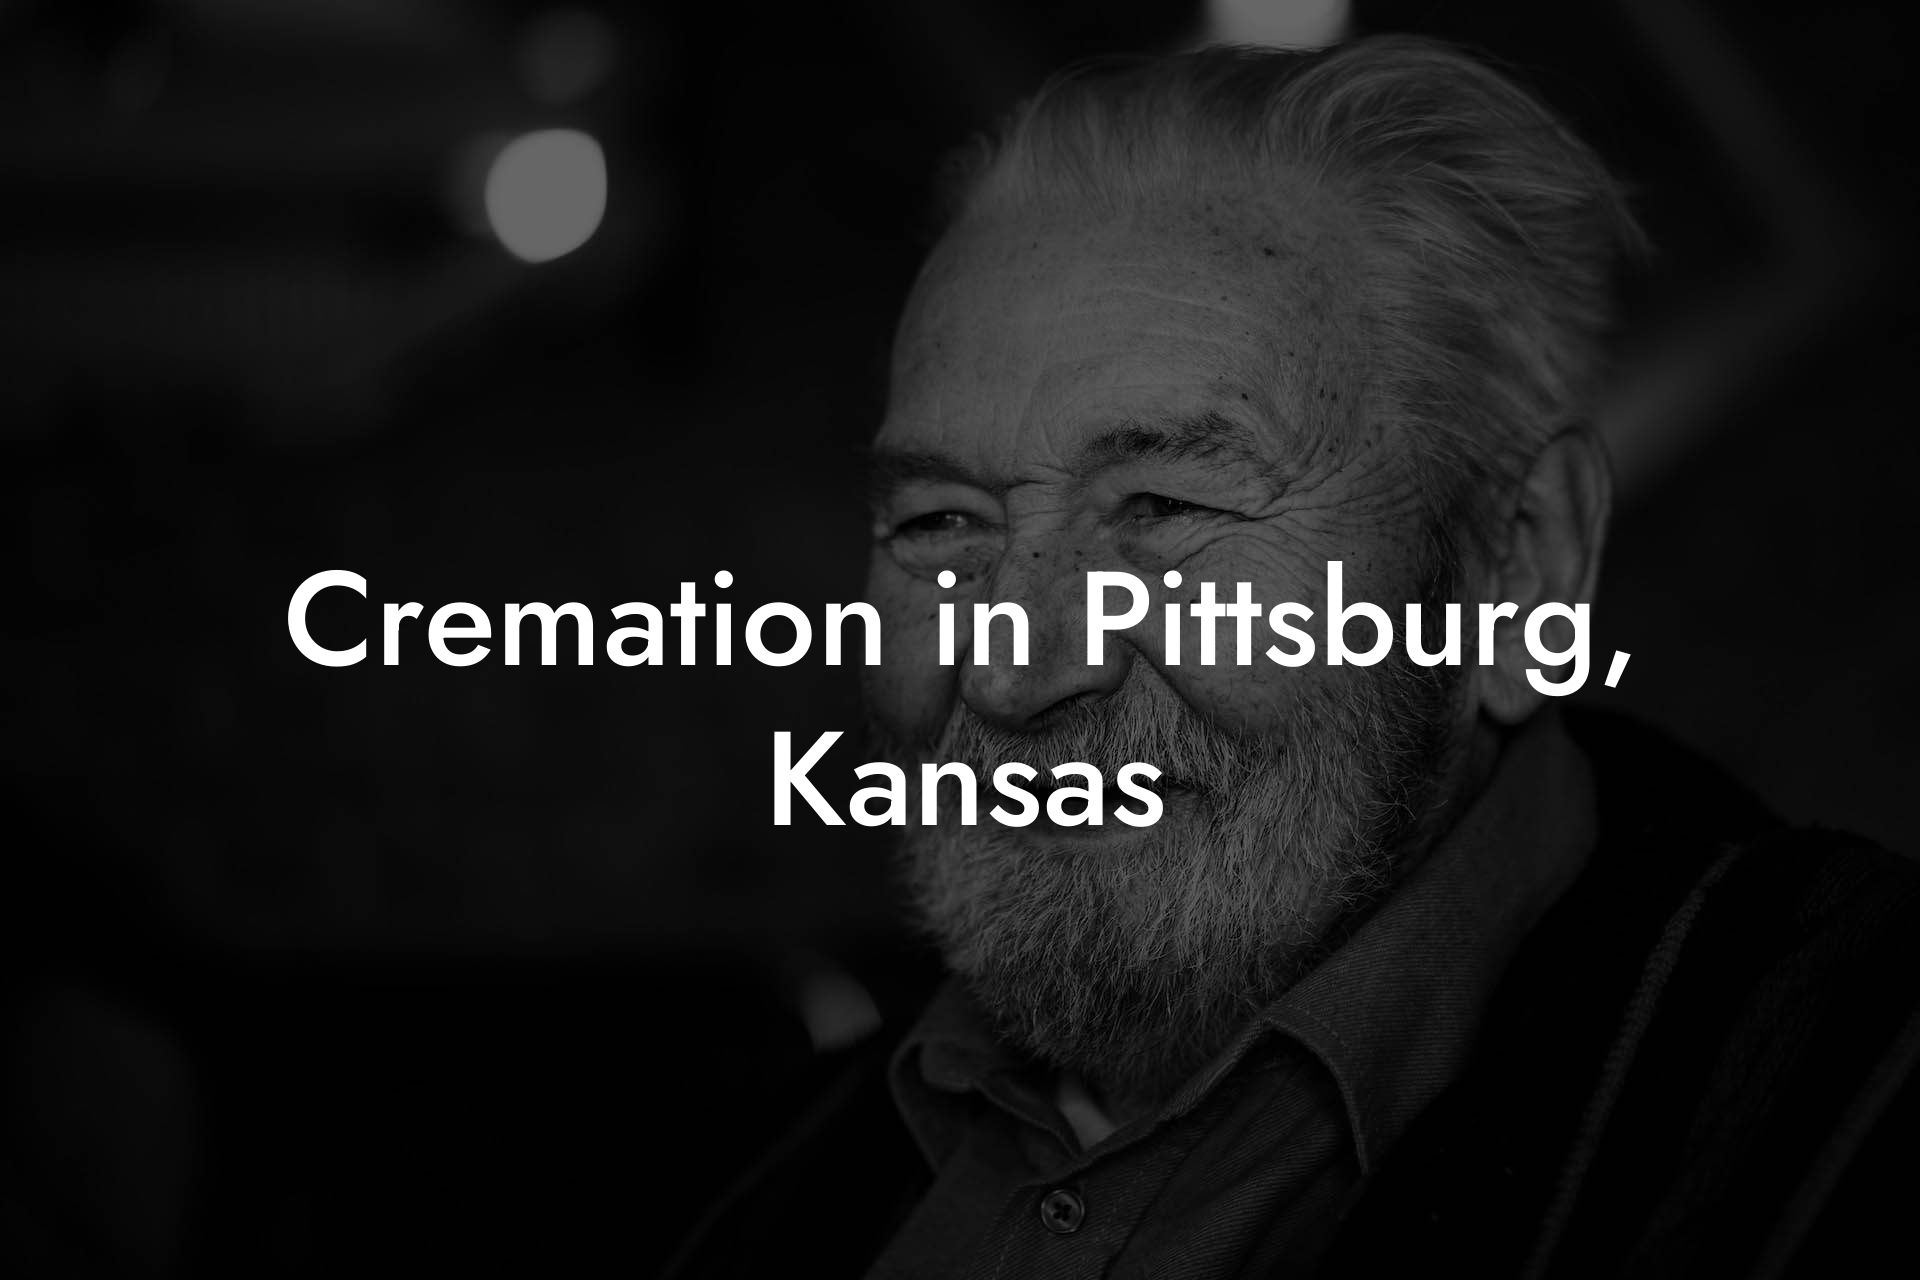 Cremation in Pittsburg, Kansas